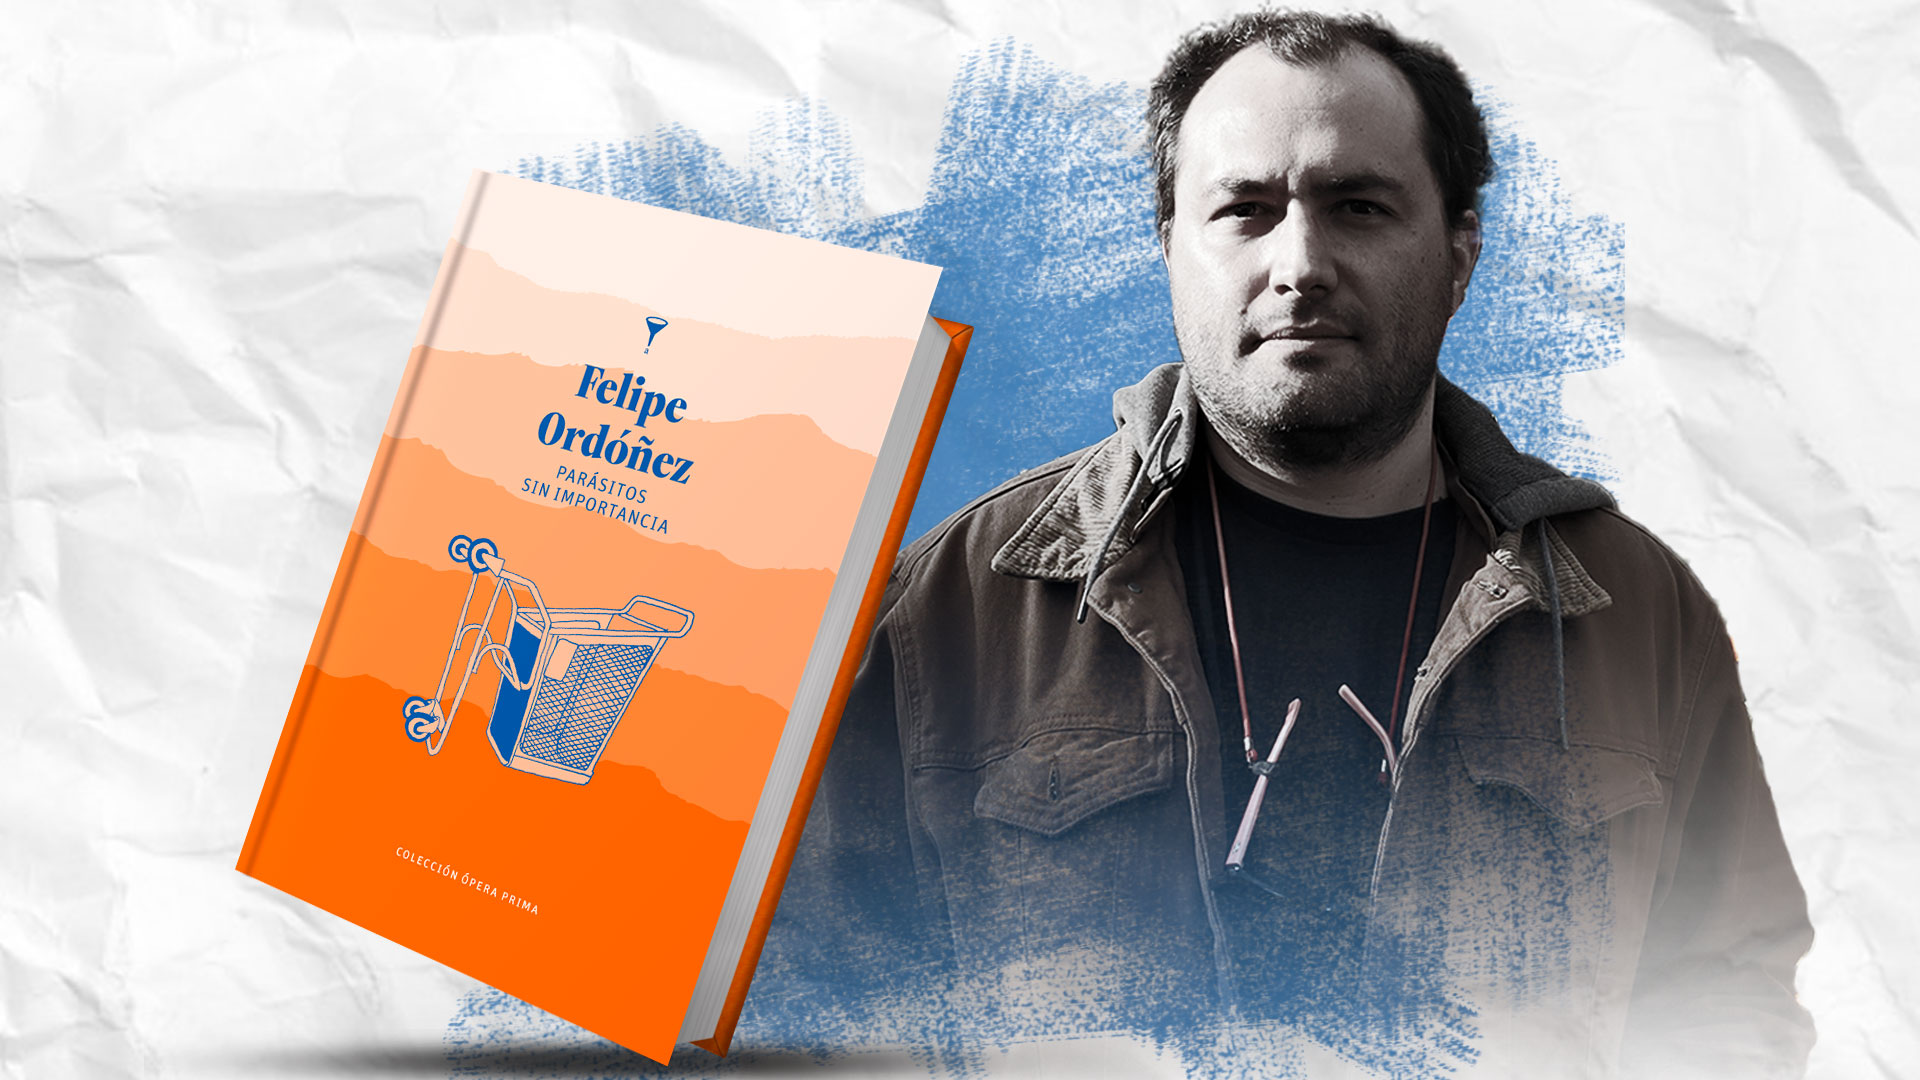 Felipe Ordóñez es el autor de "Parásitos sin importancia", titulo publicado por Angosta Editores. Diseño a partir de fotografías: Jesús Avilés/Infobae.